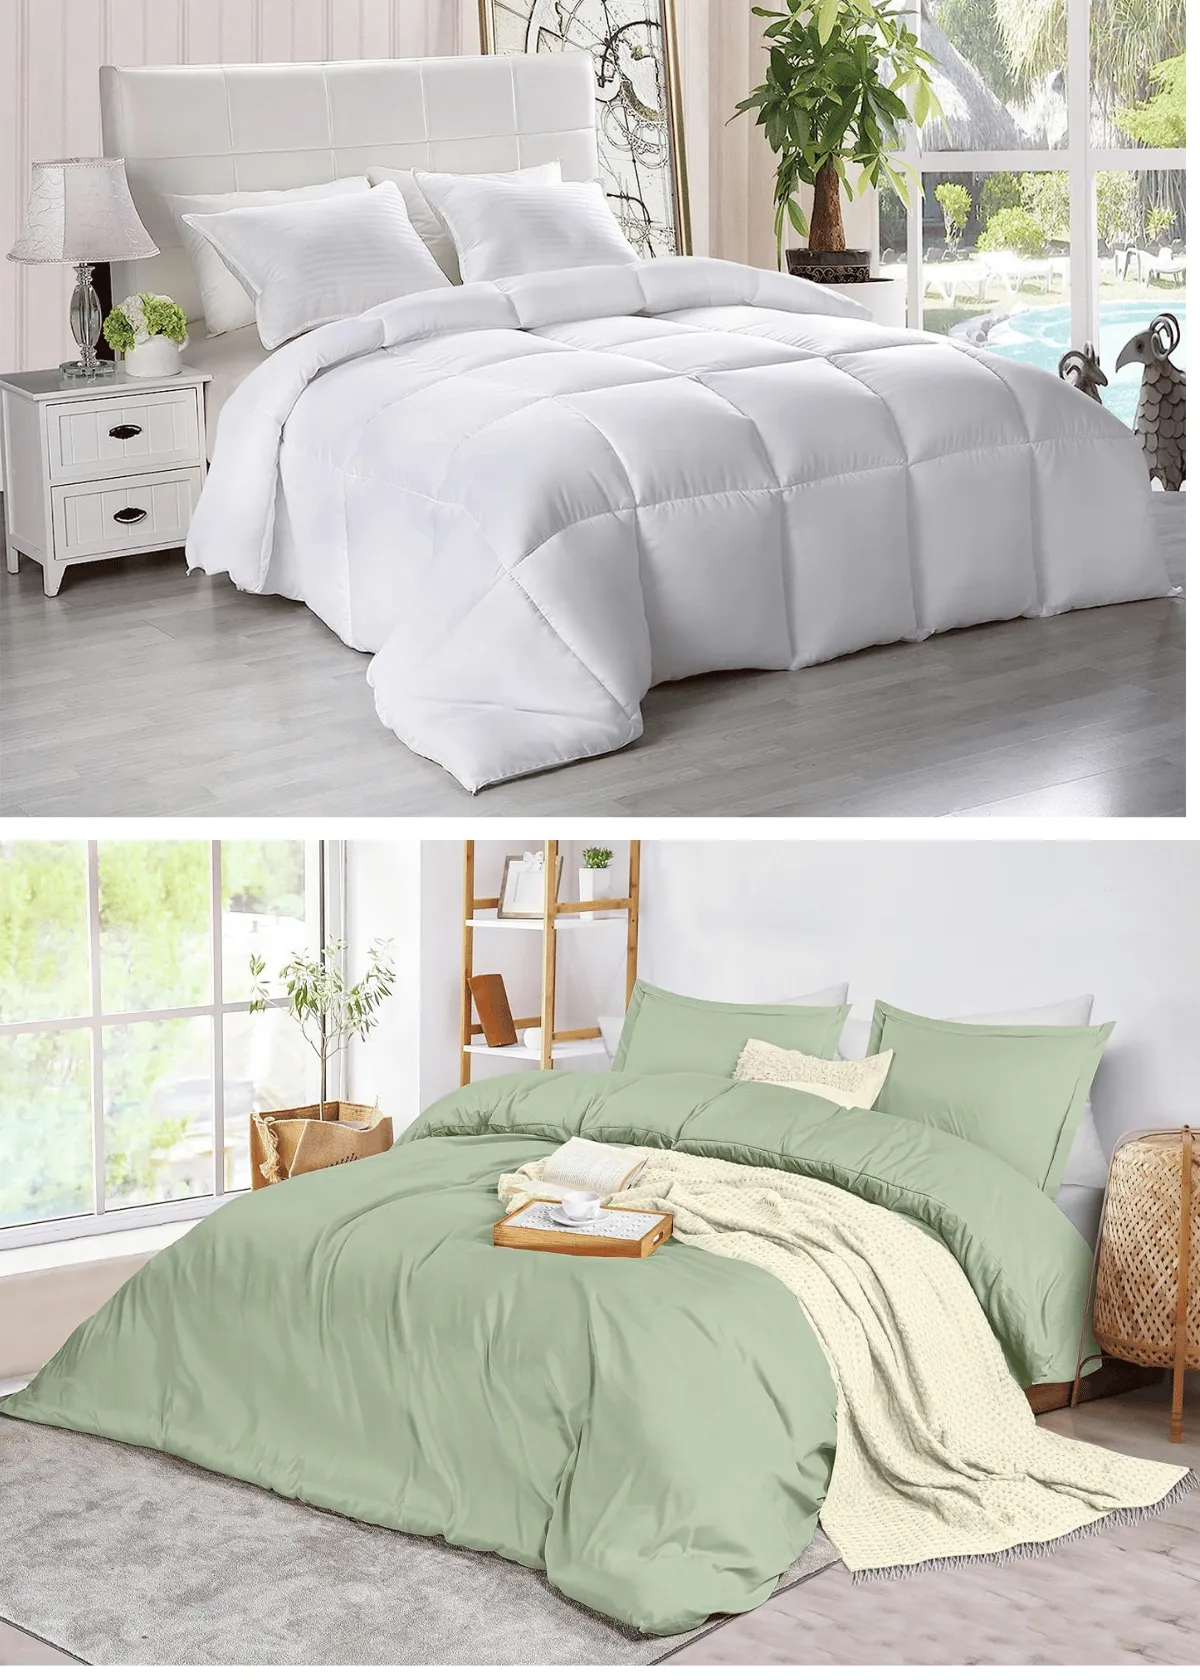 "The 10 Best Utopia Bedding Comforters For Snuggle-Worthy Sleep"